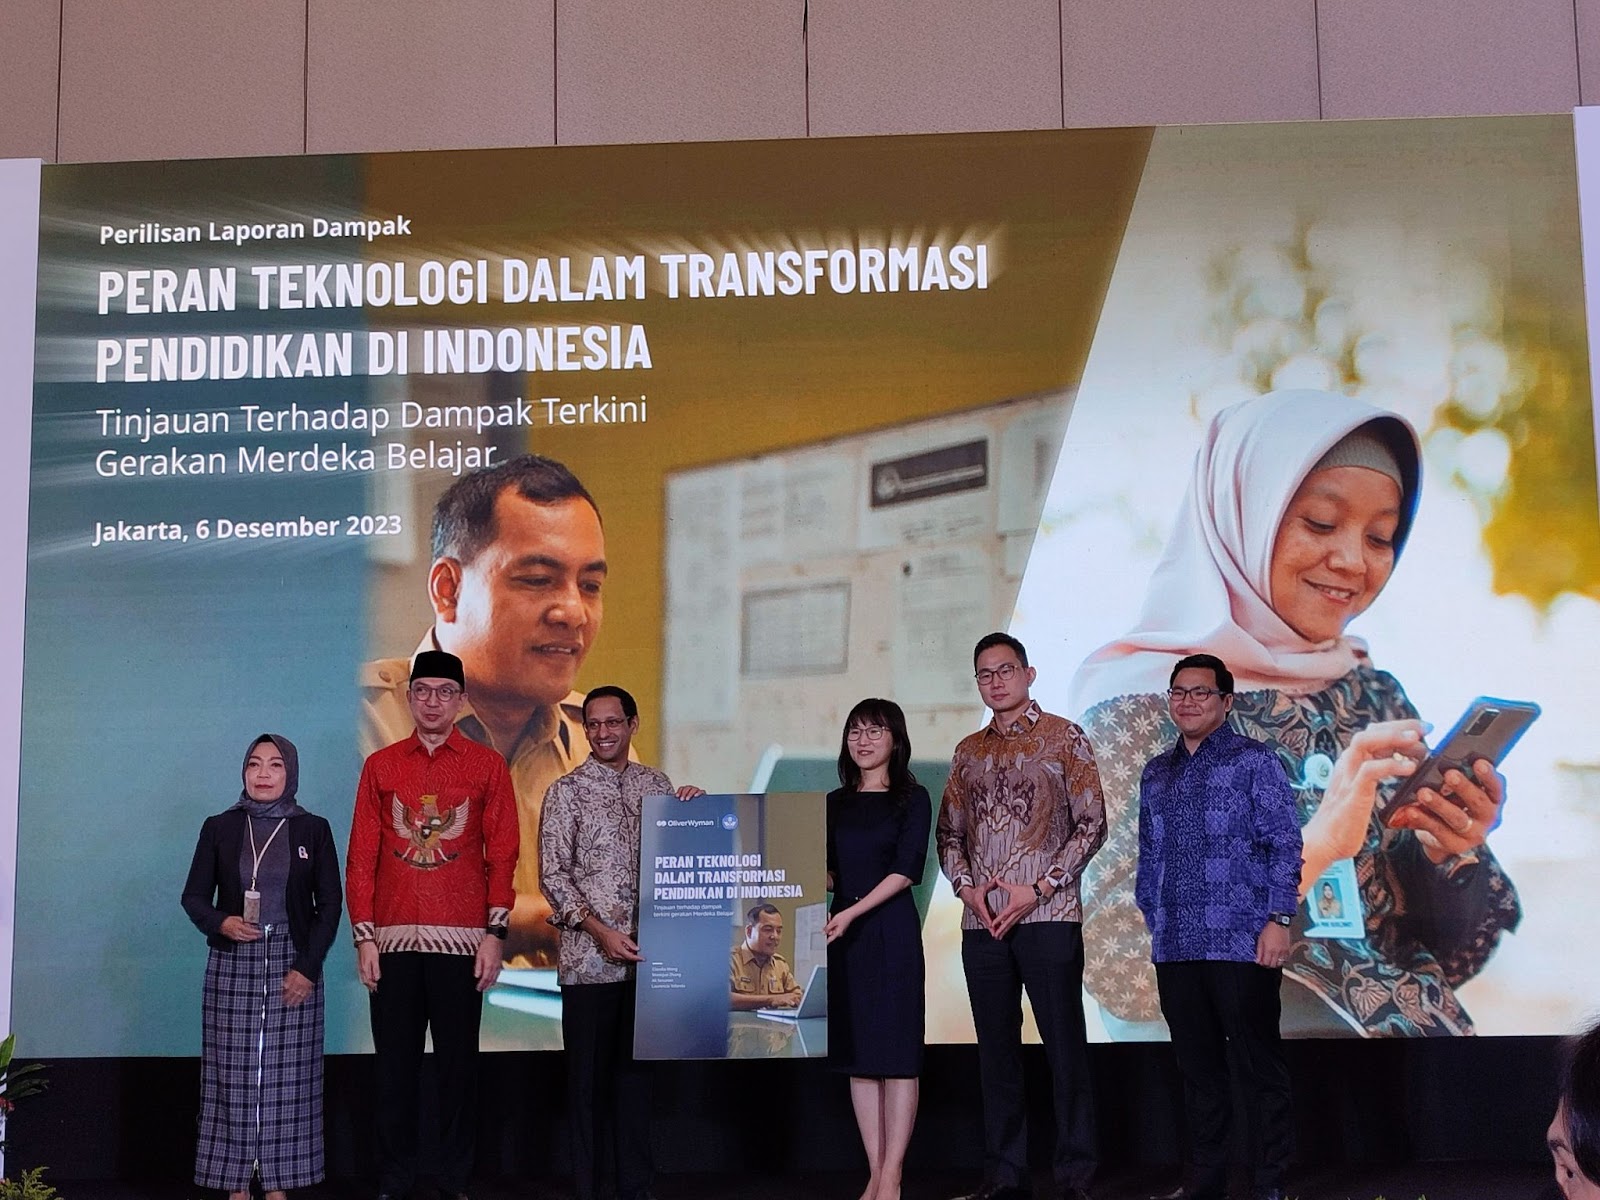 Gerakan Merdeka Belajar Sukses Tranformasi Pendidikan di Indonesia!